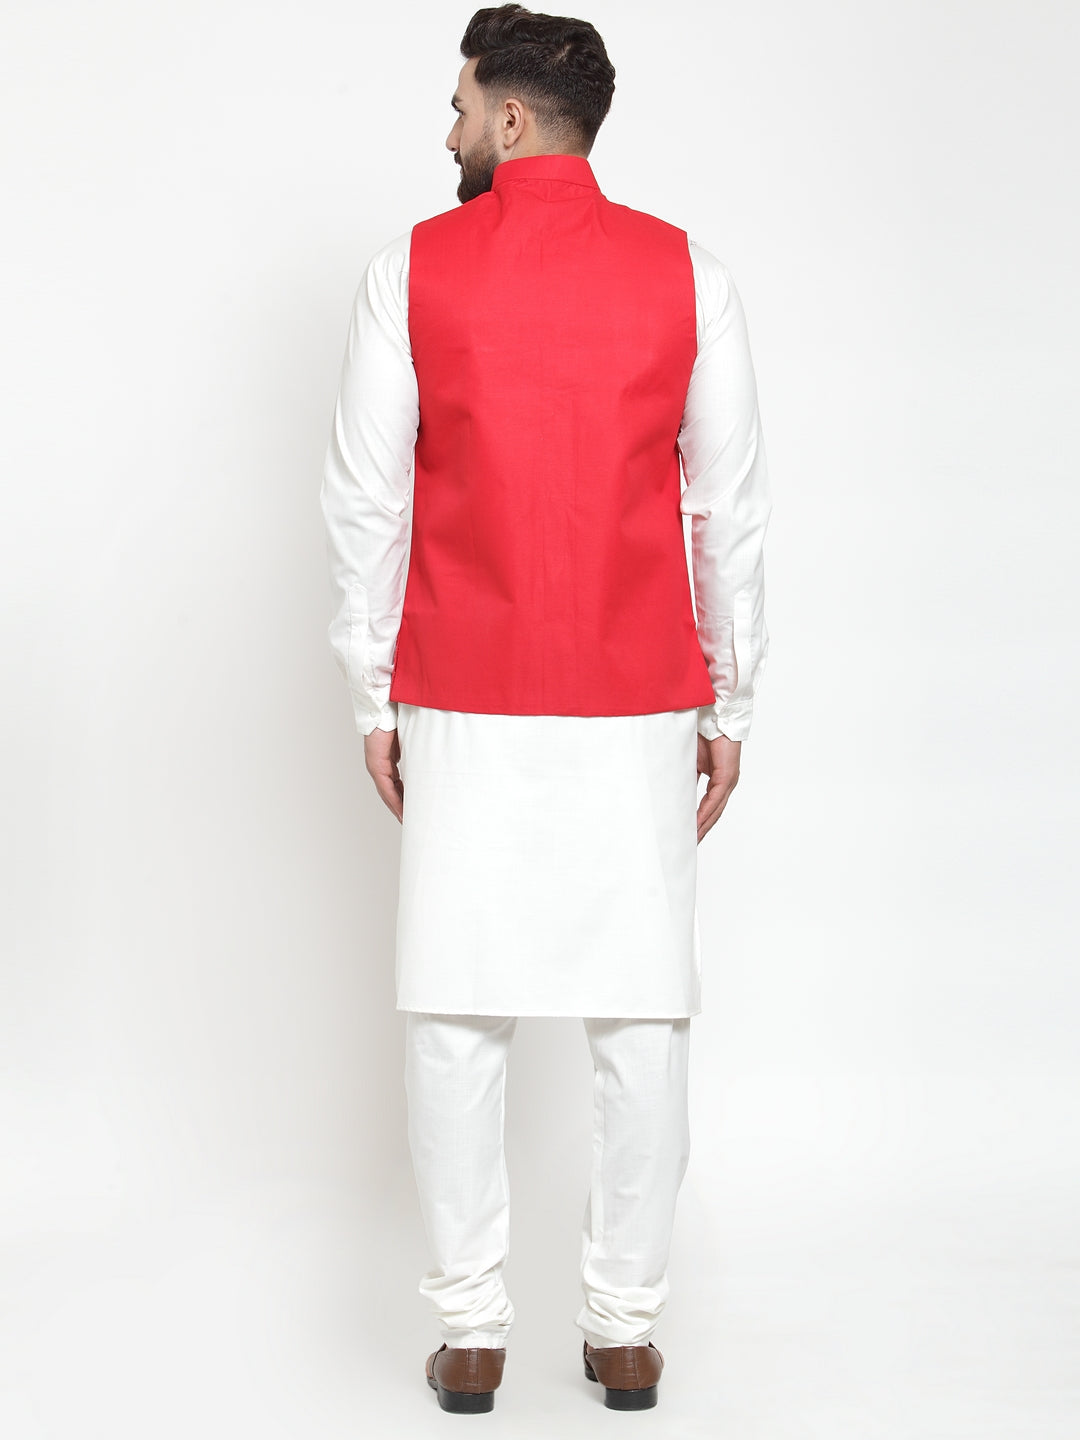 Jompers Men's Solid Kurta Pajama with Solid Waistcoat (Red) - Distacart